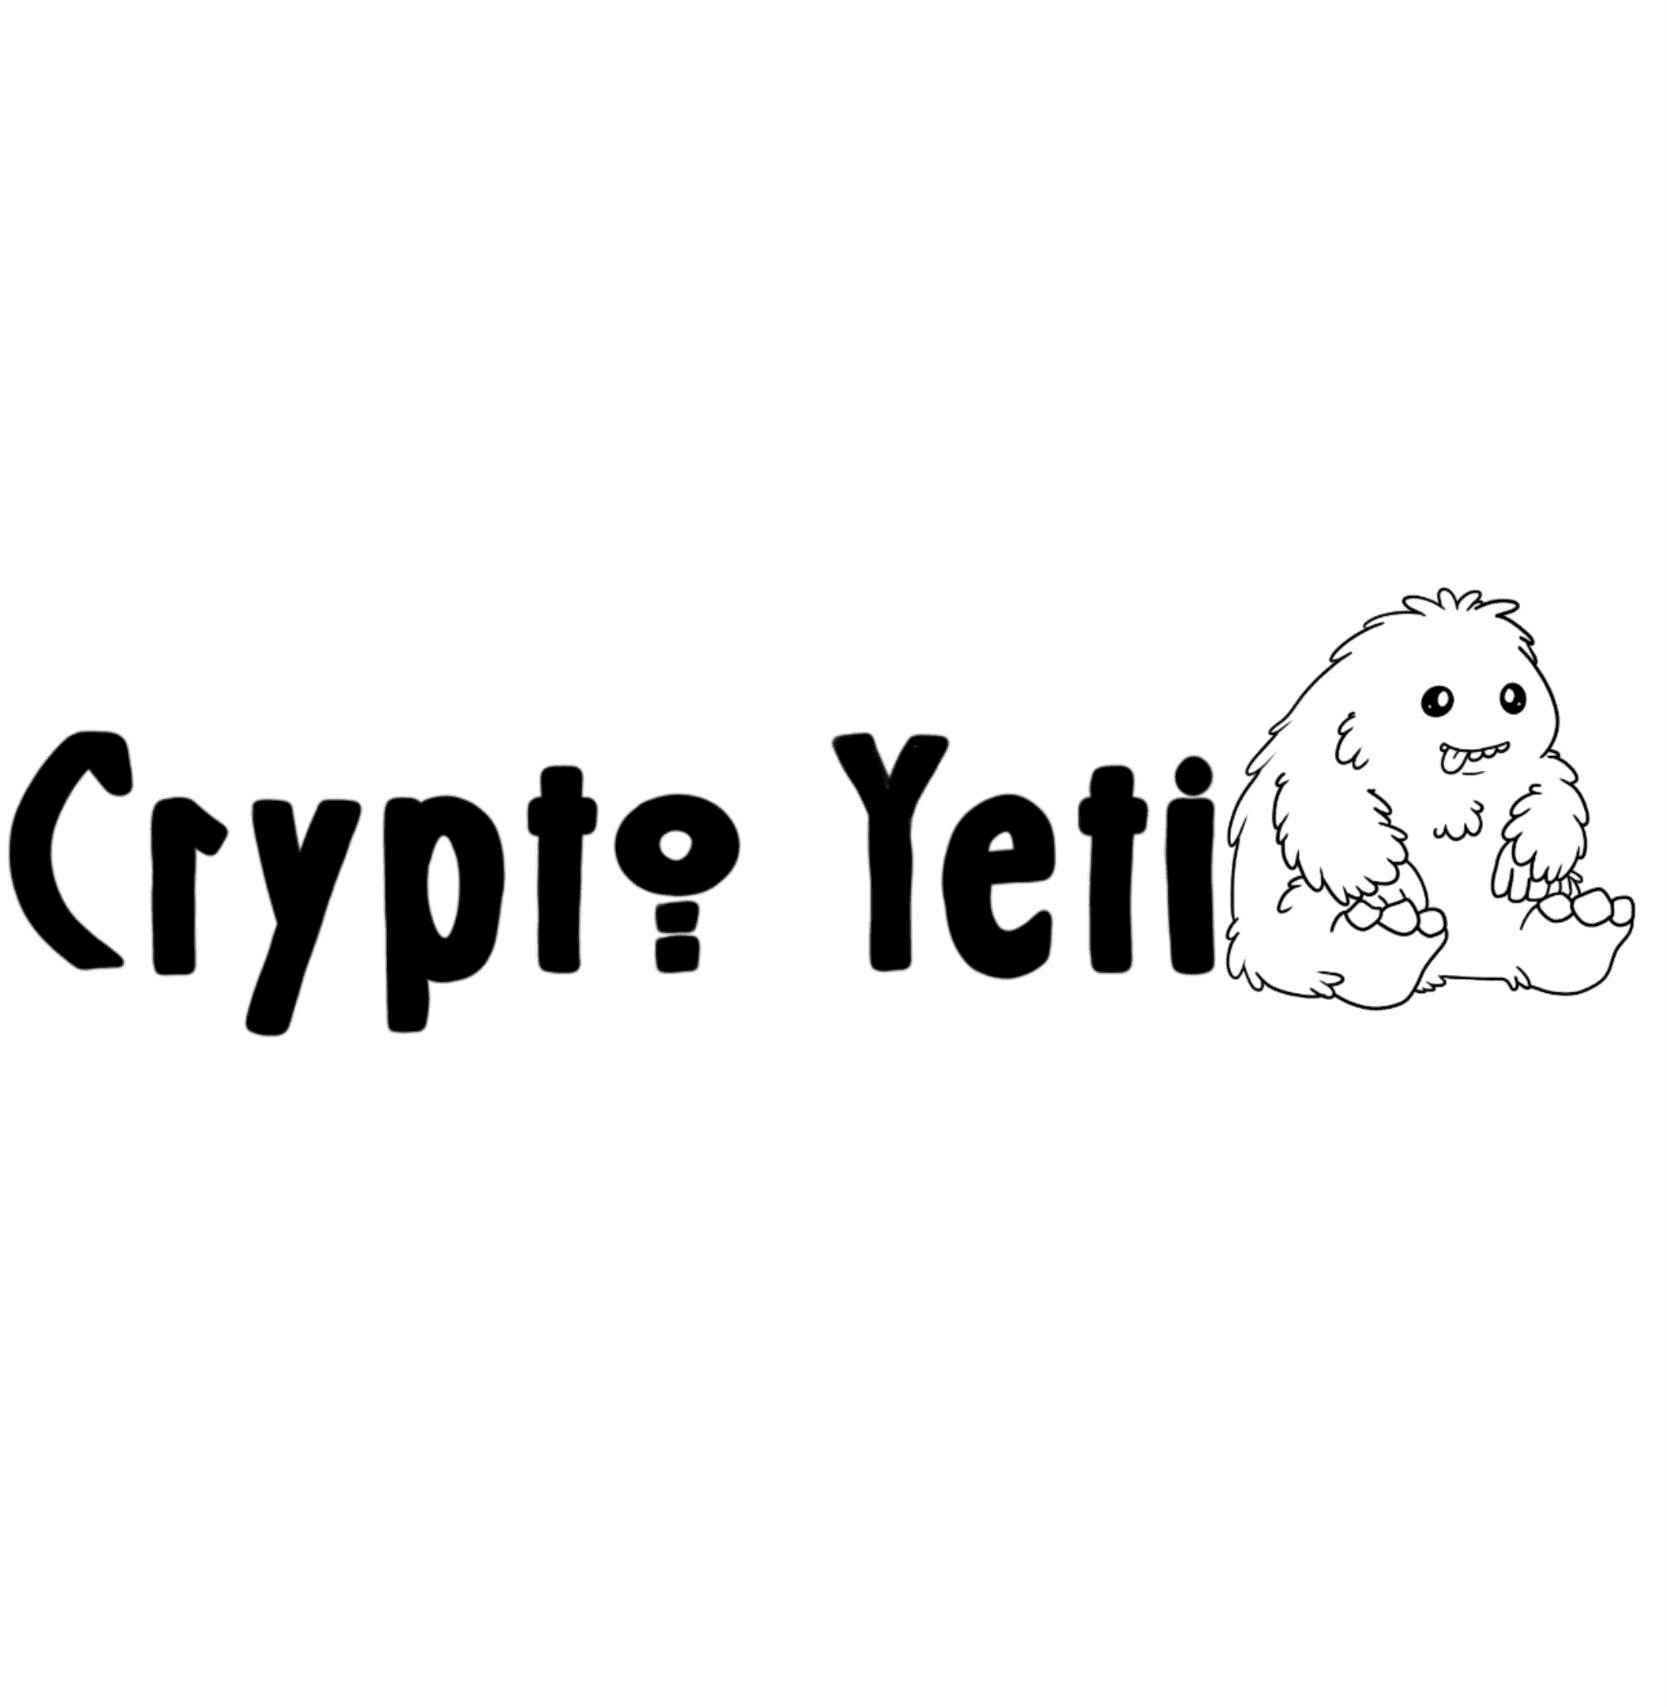 Crypto_Yeti1 横幅